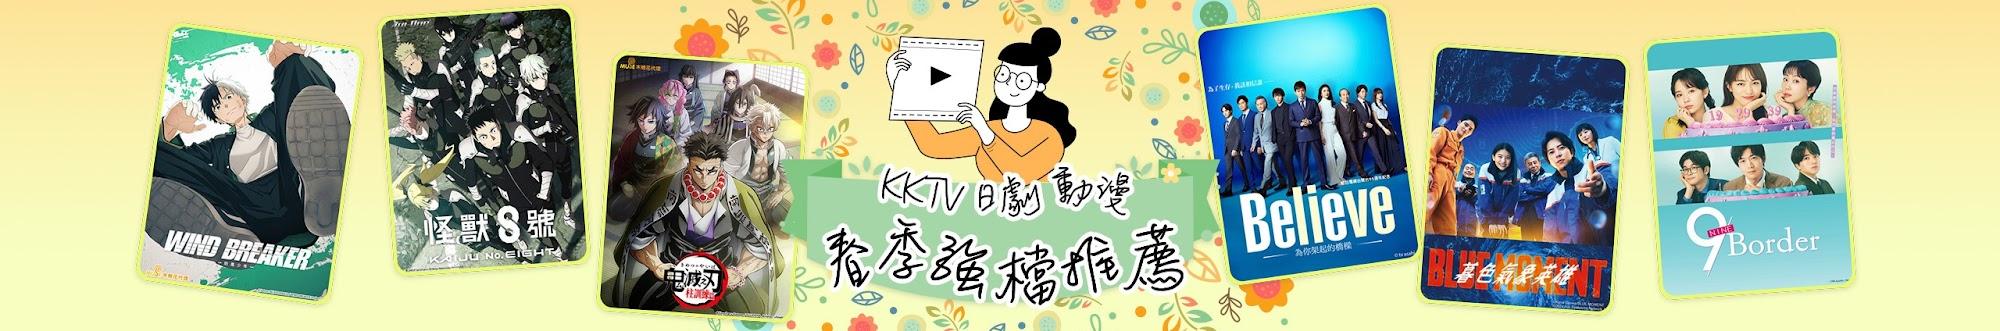 KKTV - 日劇、台劇、韓劇、陸劇、動漫線上看